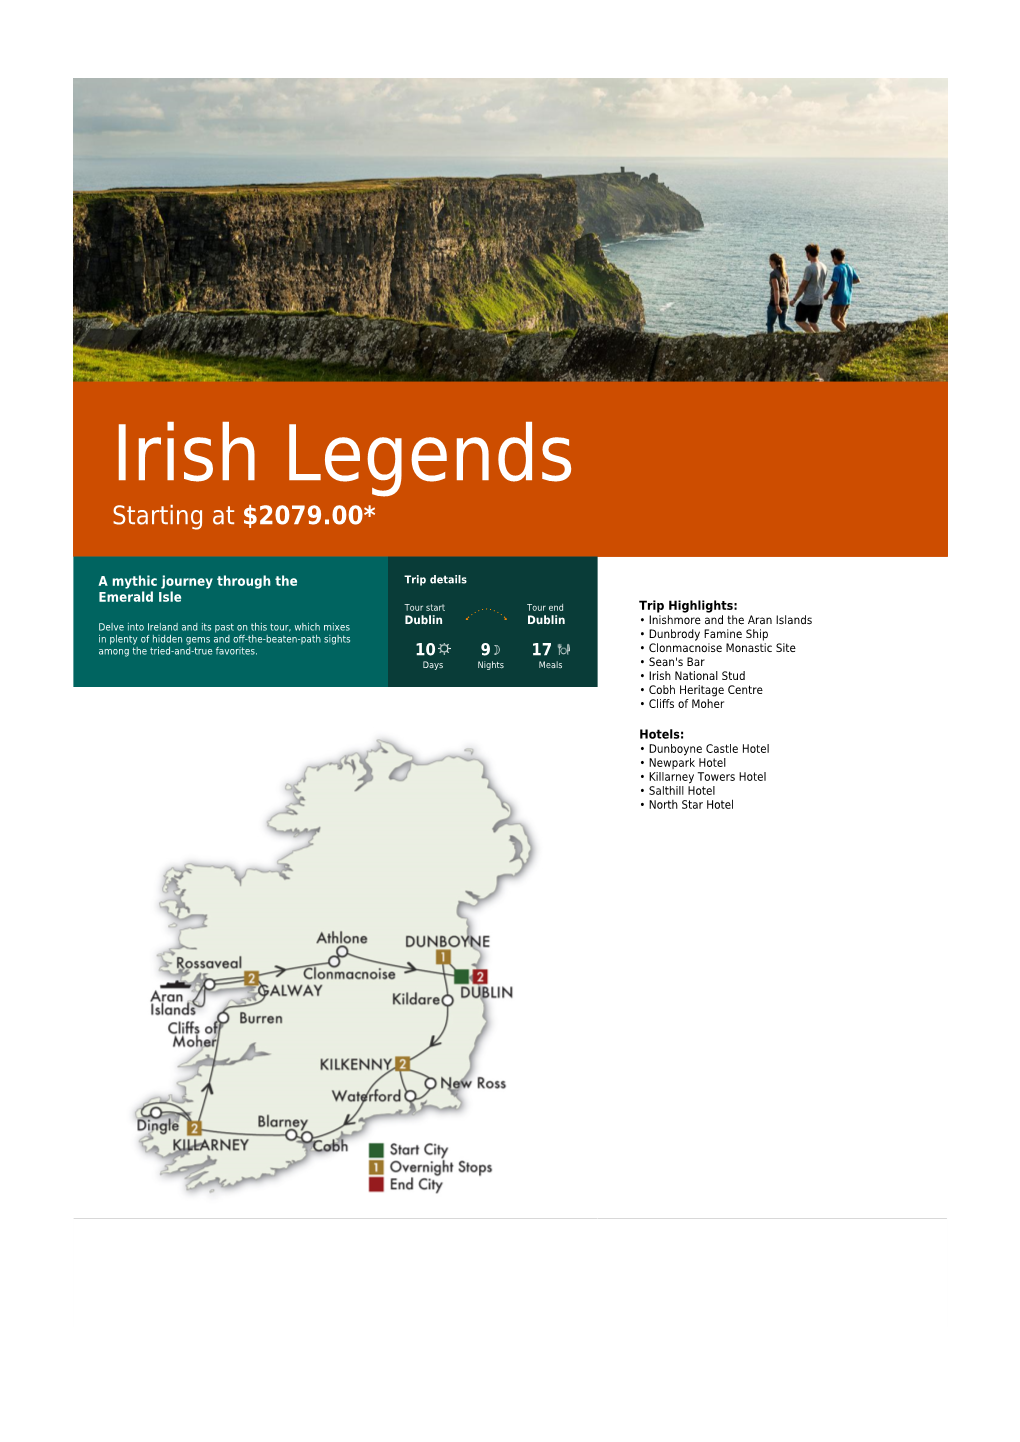 Irish Legends Starting at $2079.00*